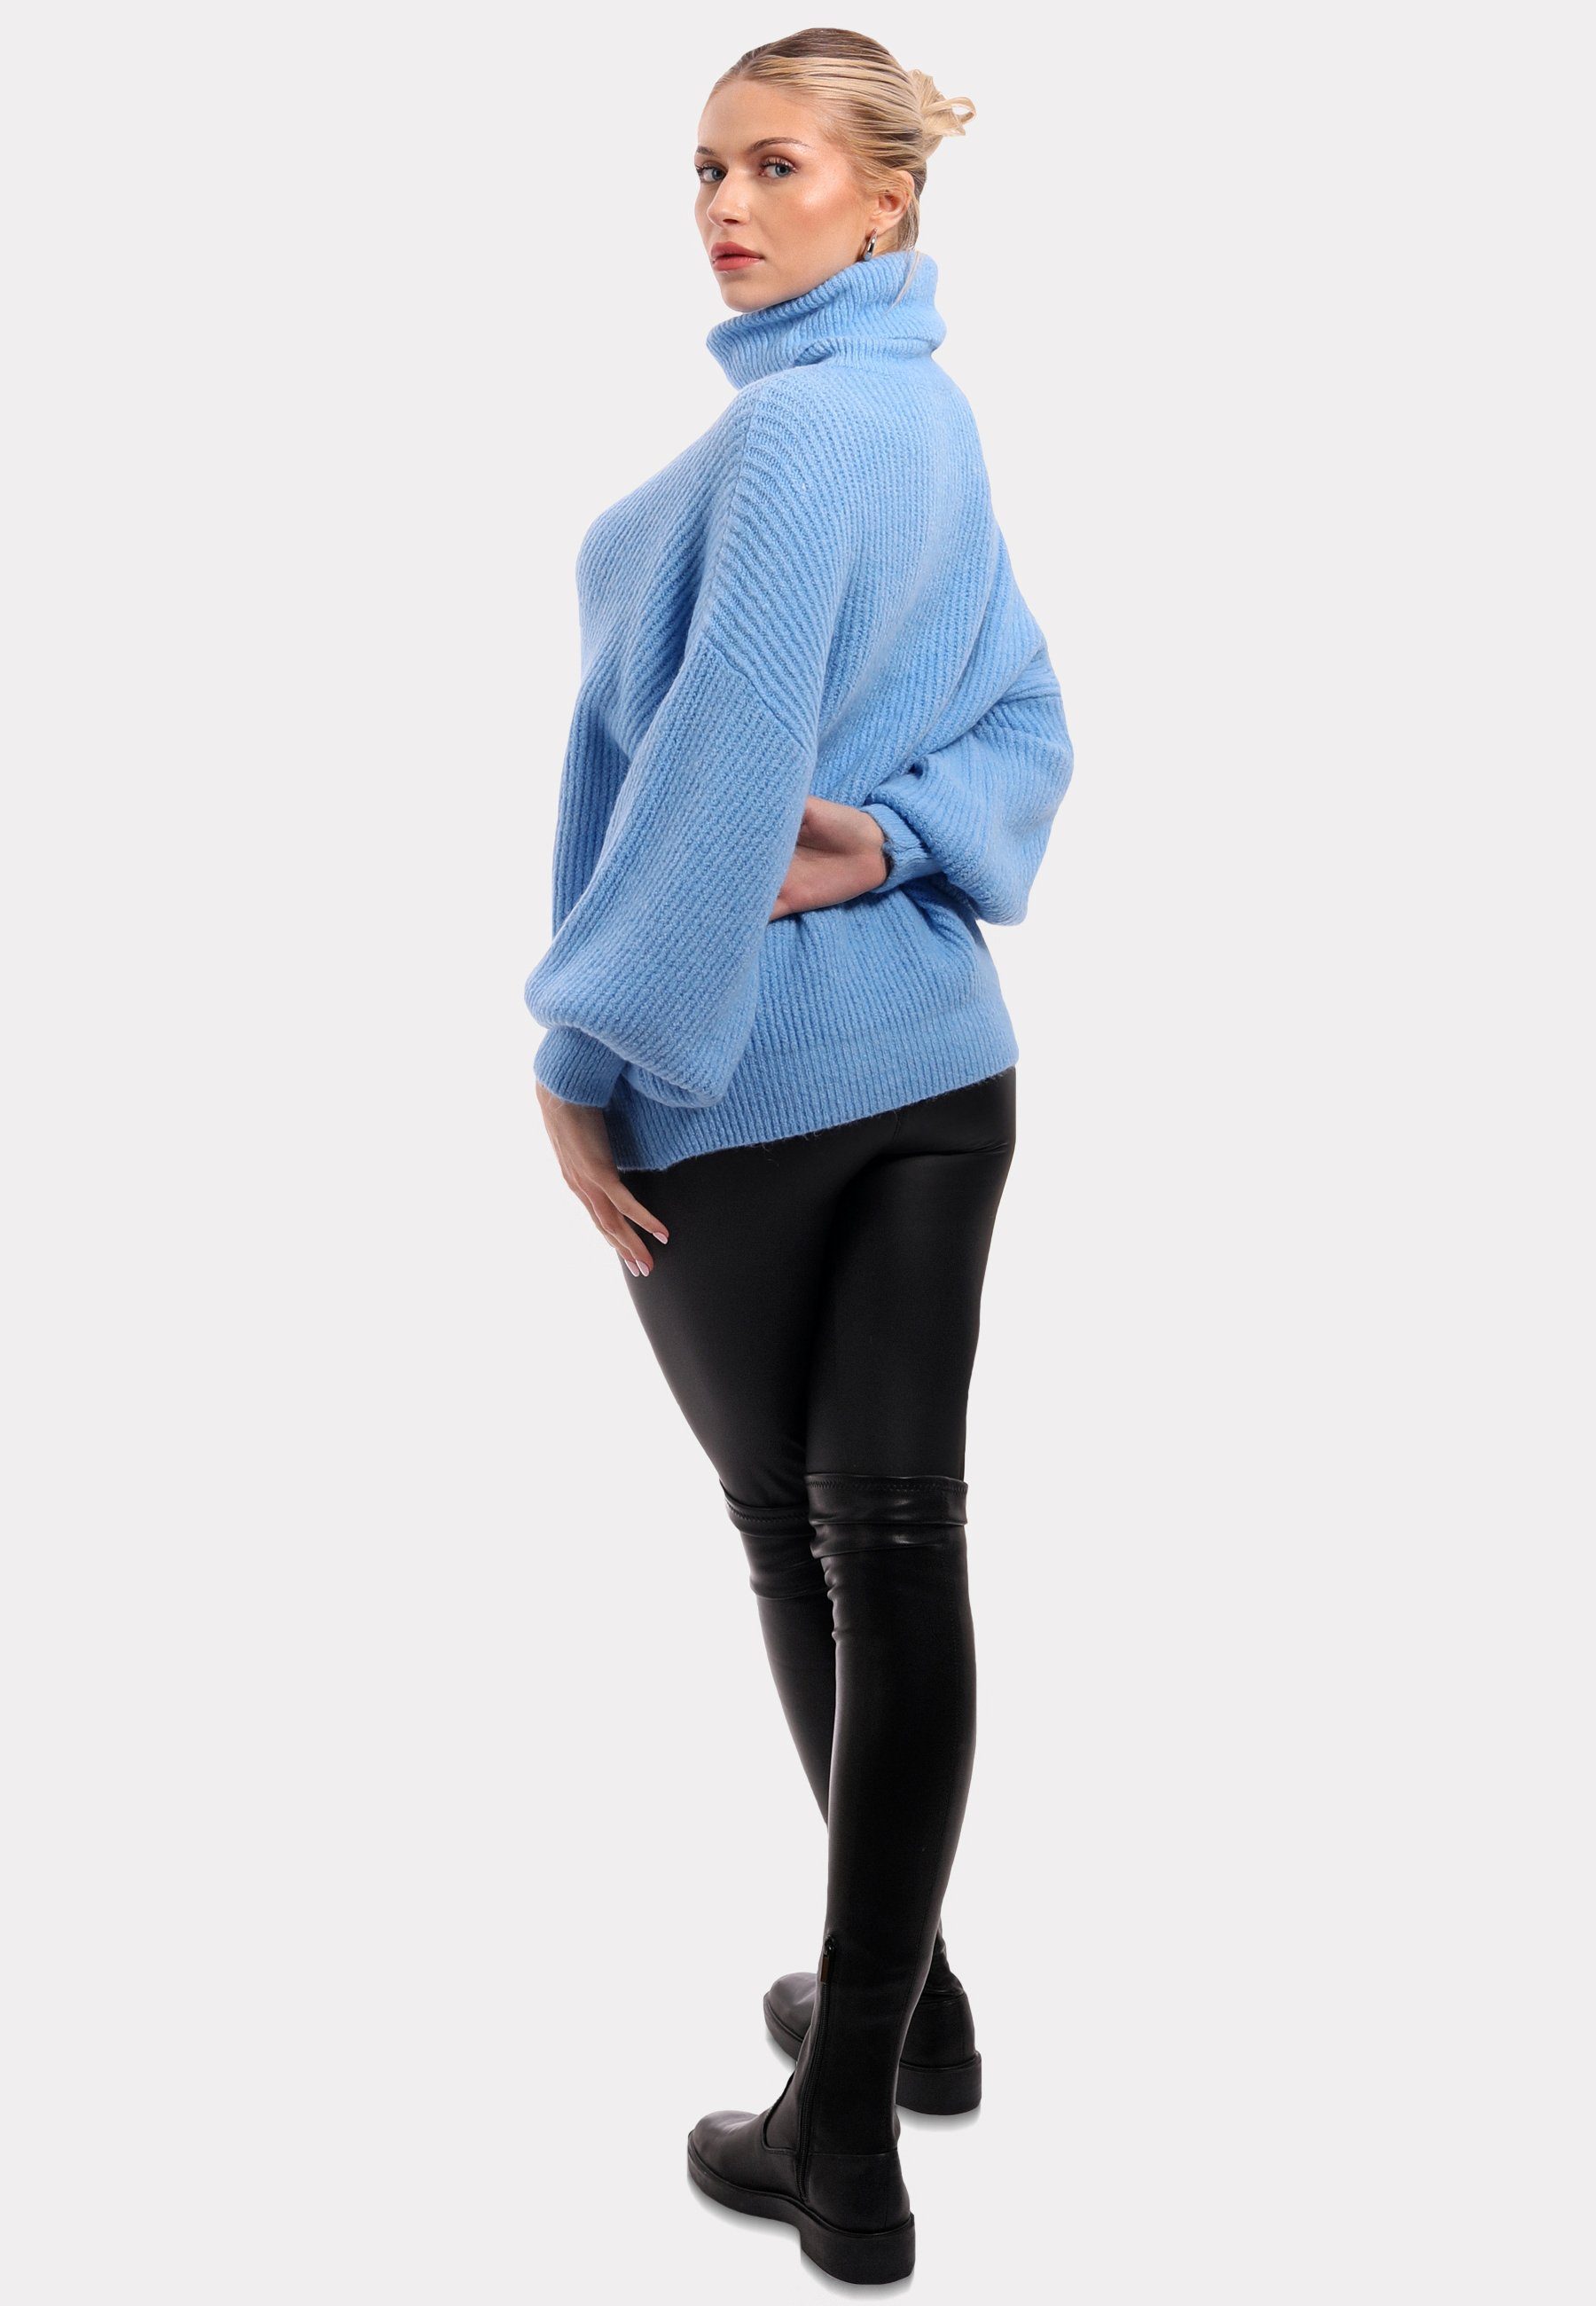 Style & YC Winter Casual Unifarbe Fashion Sweater Pullover Rollkragenpullover Blau in mit Rollkragen